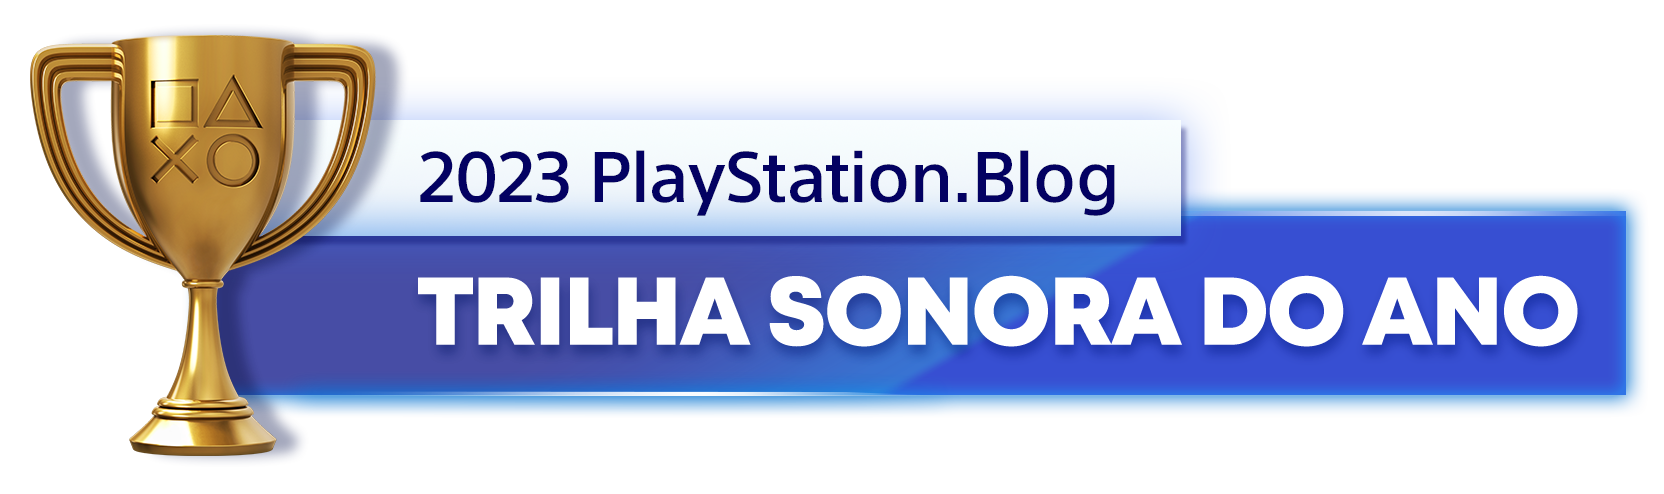  "Troféu de Ouro para o vencedor da categoria Trilha Sonora do Ano de 2023 do PlayStation Blog"